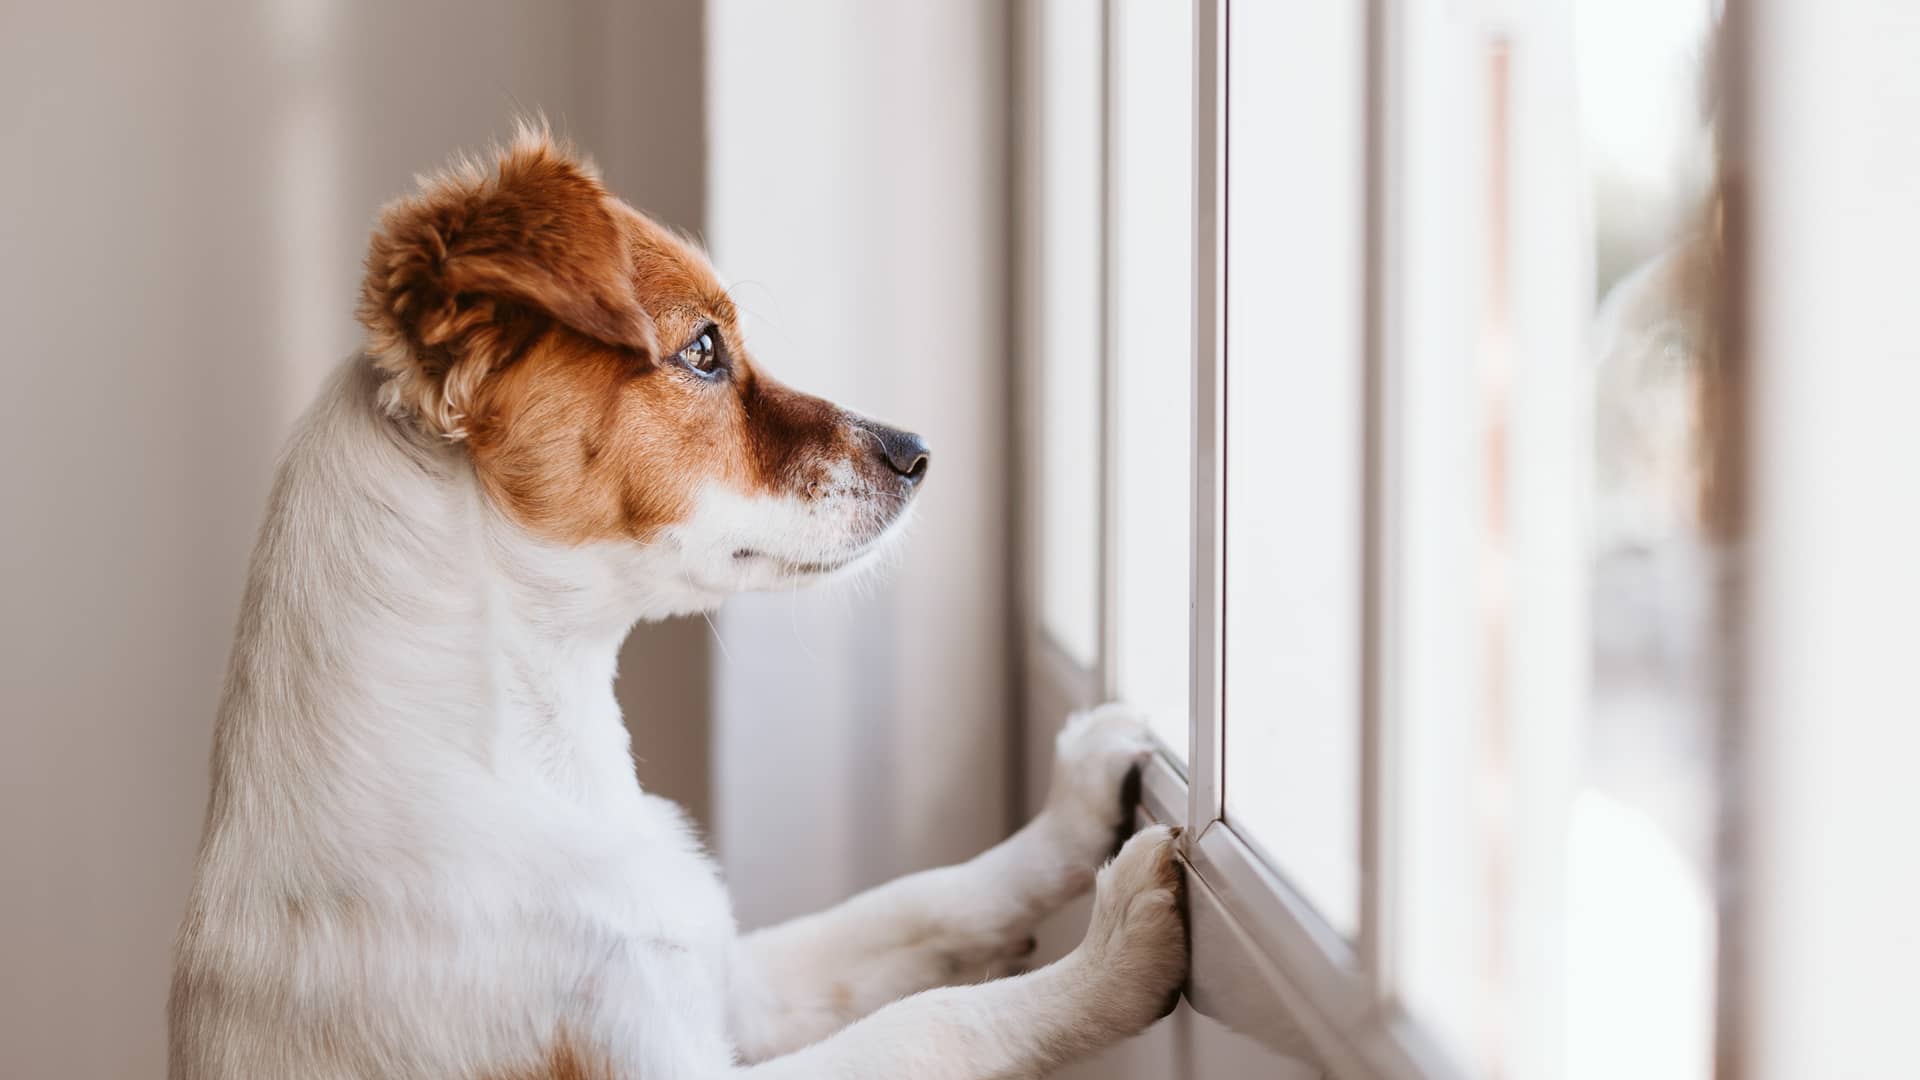 Perro dentro de vivienda con alarma configurada para la detección de mascotas para no activar alarma